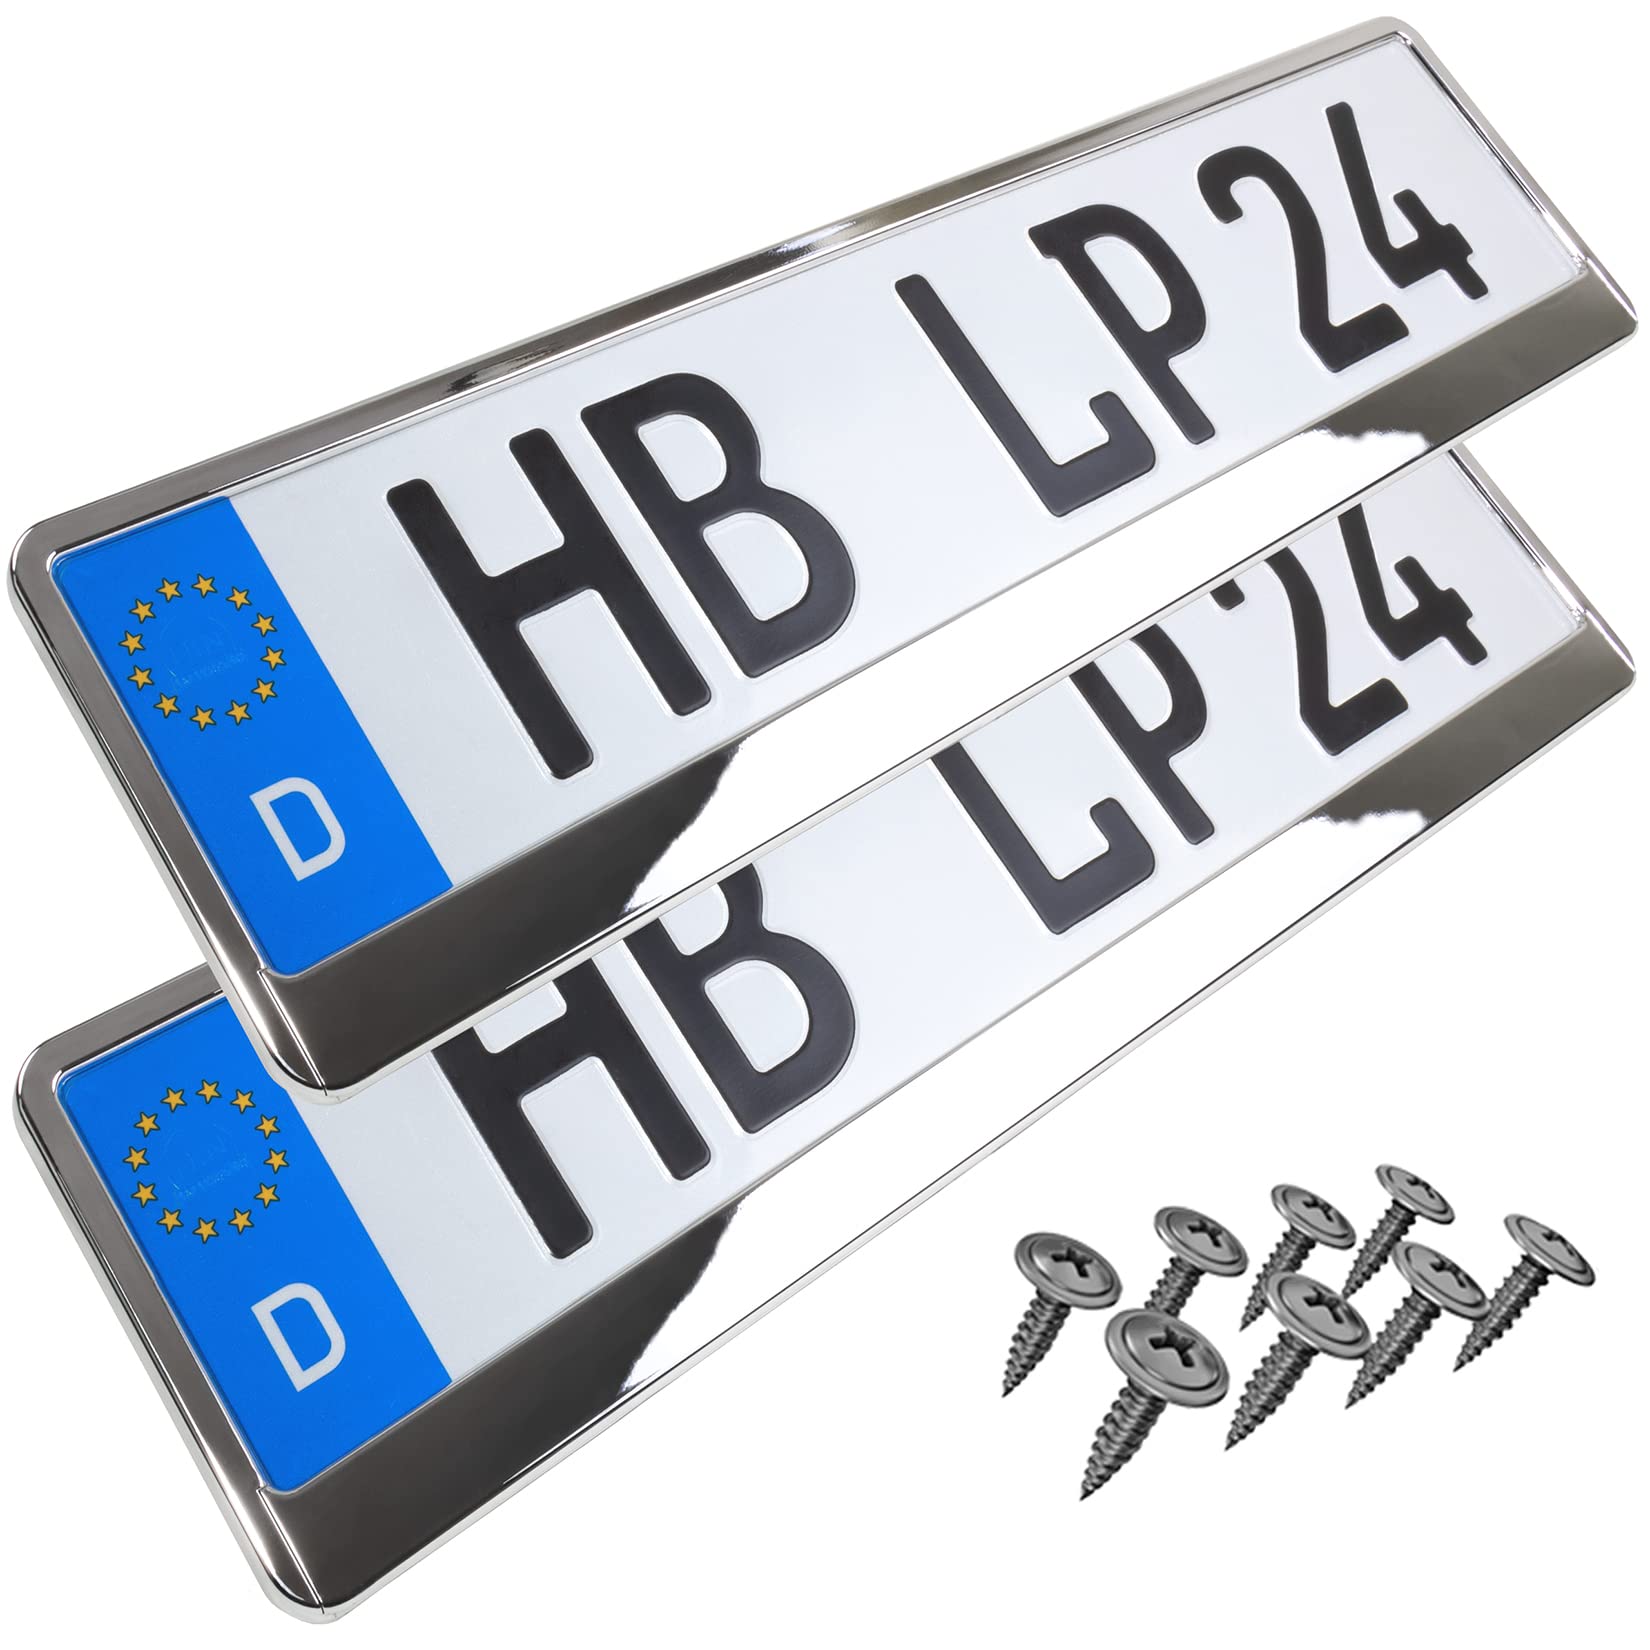 L&P A167 2 STK Kennzeichenhalter Auto Nummernschildhalter Chrom Vollchrom Kennzeichenverstärker Kennzeichenhalterung Nummernschildhalterung Verstärker Halter für Kennzeichen Nummernschild von L & P Car Design